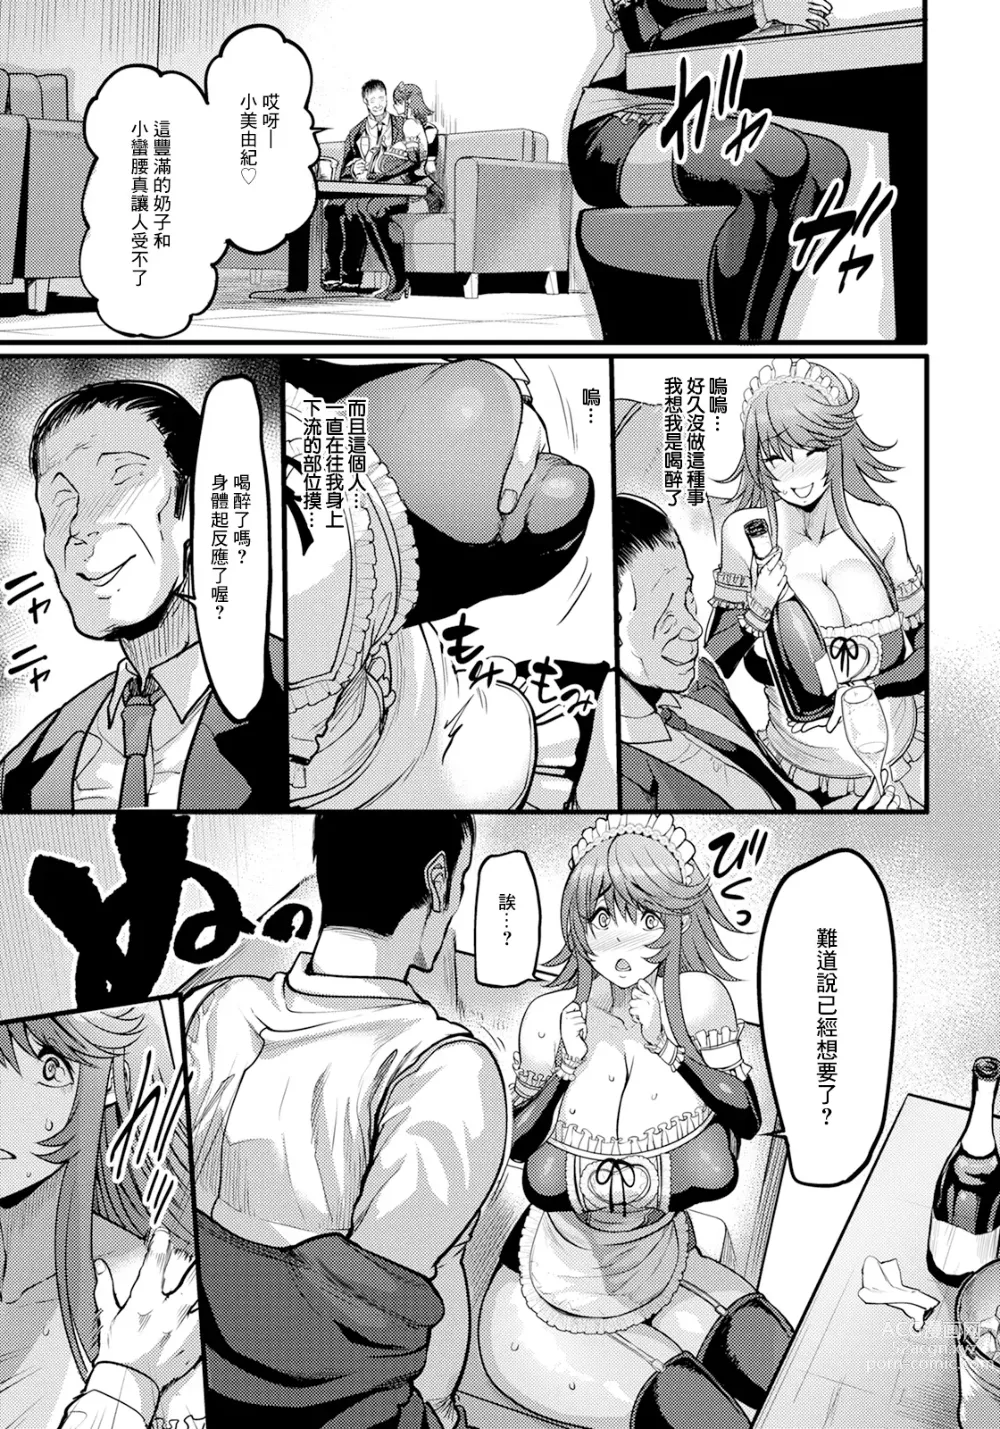 Page 9 of manga Uwa Kitsu Maid Cafe ~Hitozuma Kanjokuten~